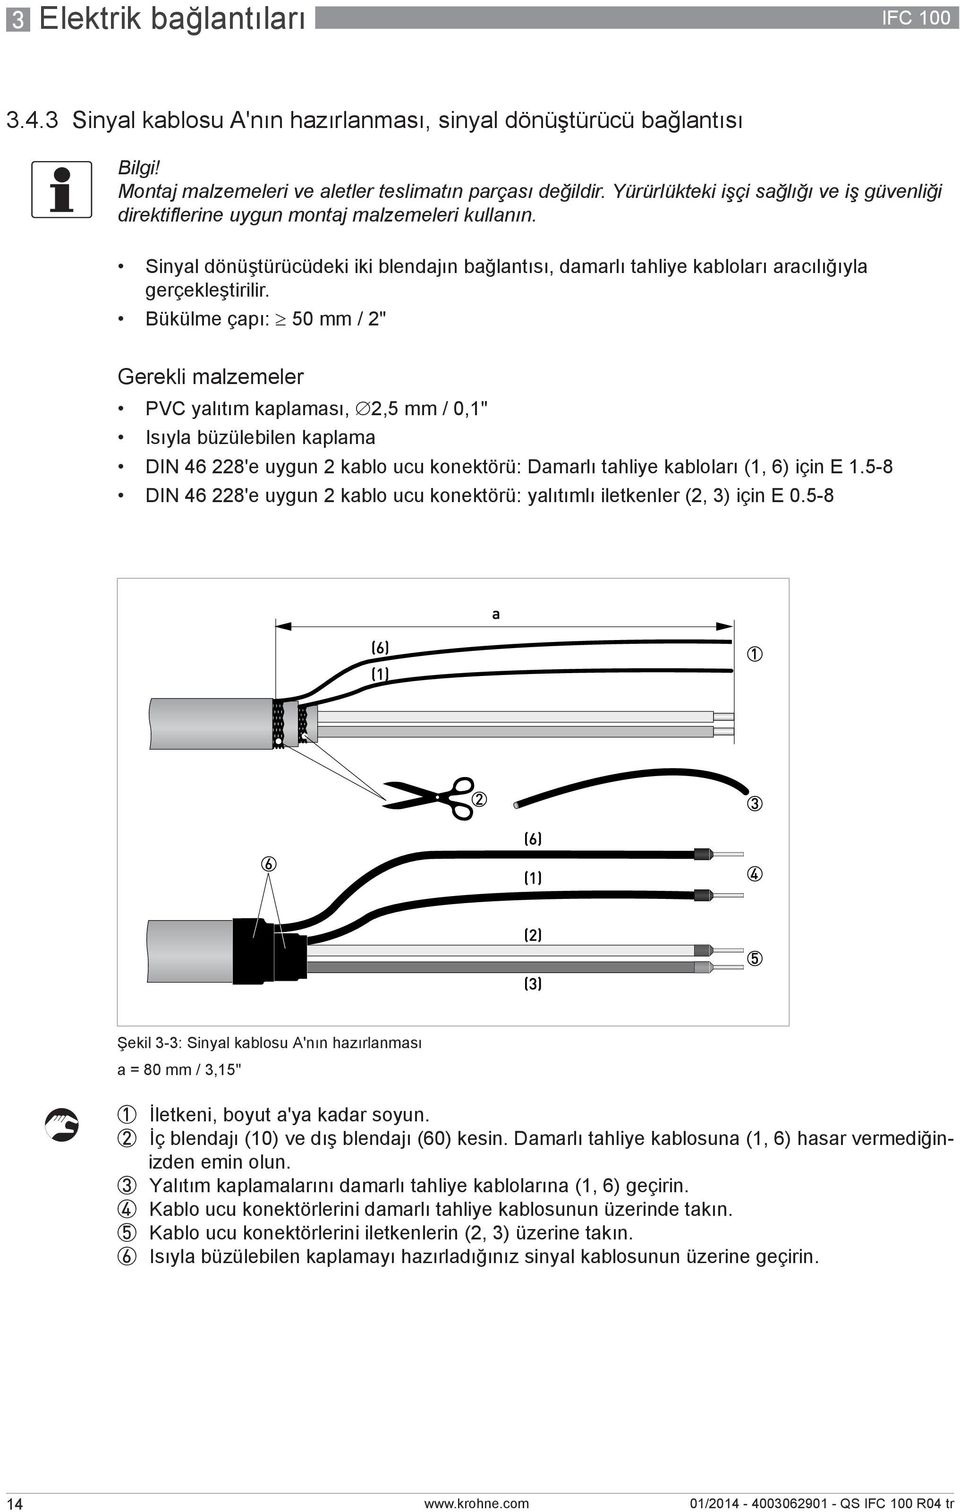 Bükülme çapı: 50 mm / 2" Gerekli malzemeler PVC yalıtım kaplaması, 2,5 mm / 0,1" Isıyla büzülebilen kaplama DIN 46 228'e uygun 2 kablo ucu konektörü: Damarlı tahliye kabloları (1, 6) için E 1.